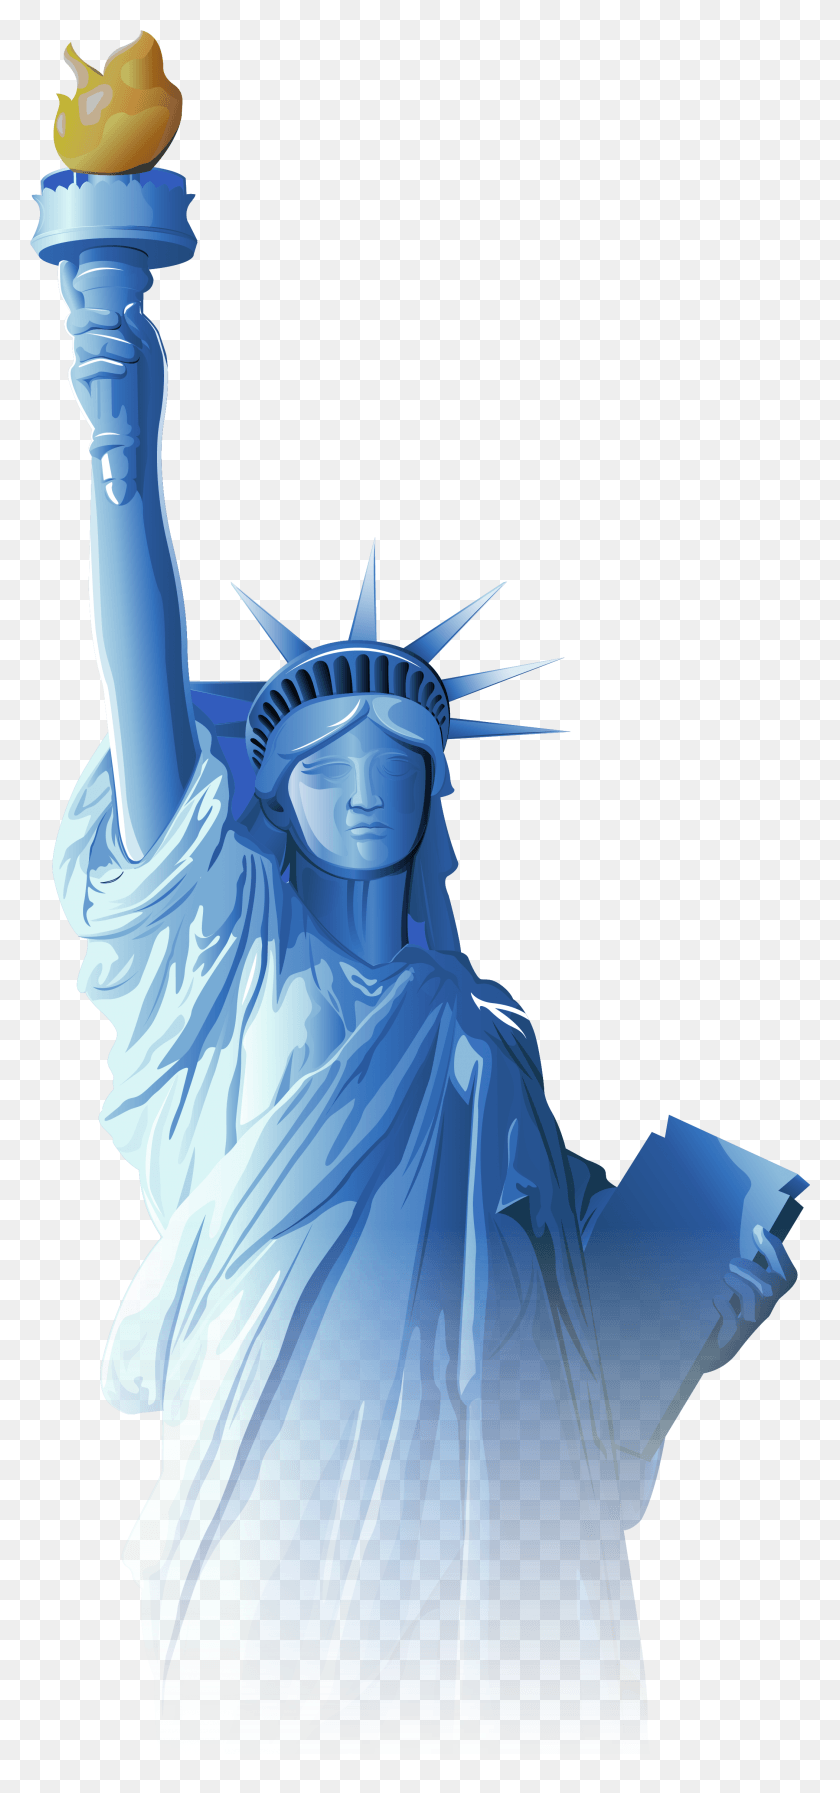 2101x4668 Статуя Свободы Статуя Свободы Прозрачный, Скульптура, Поклонение Png Скачать